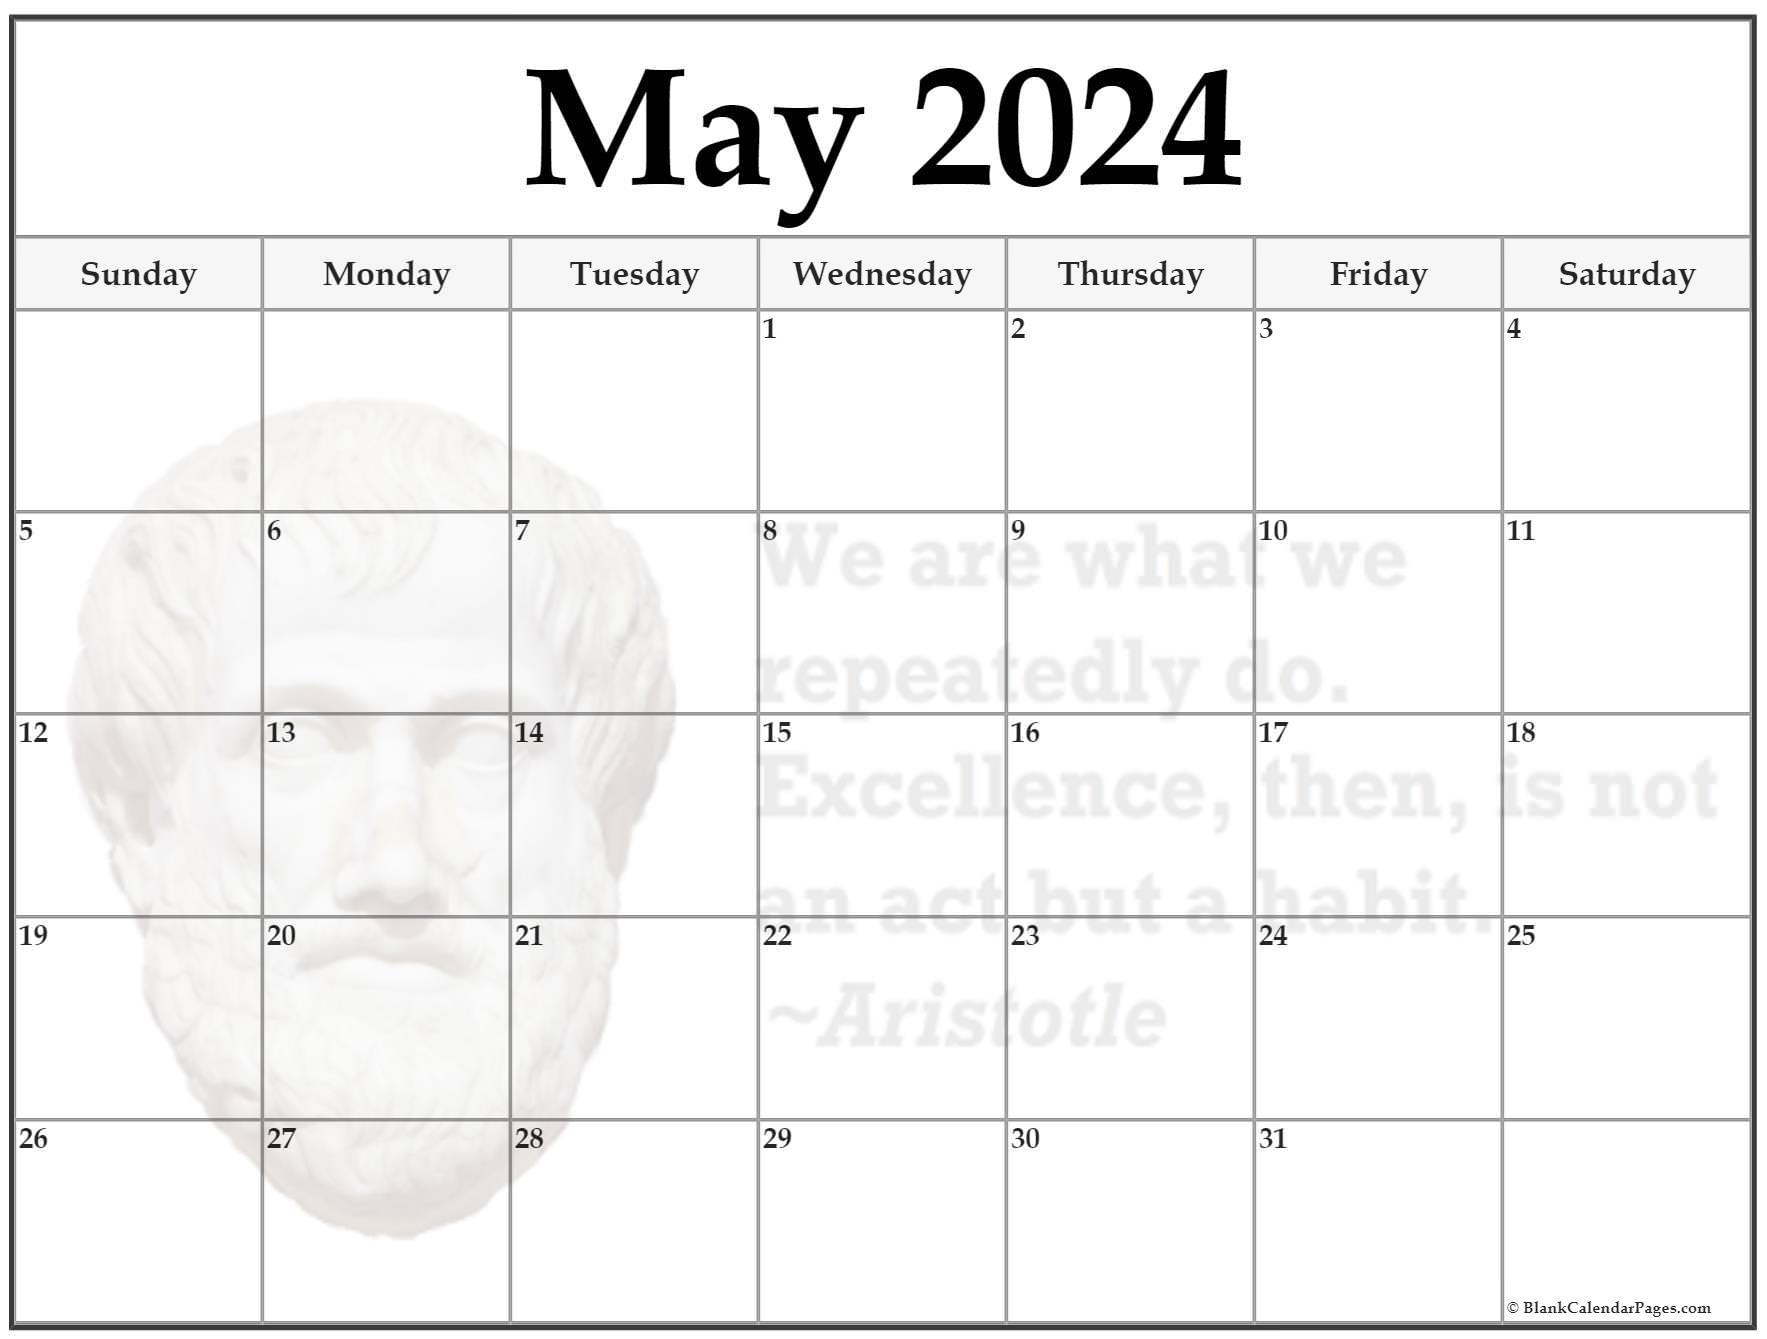 Праздники в мае 2024 г. Май 2024. Календарь май 2024 года. Календарь на май 2024г. Беременна календарь 2022.